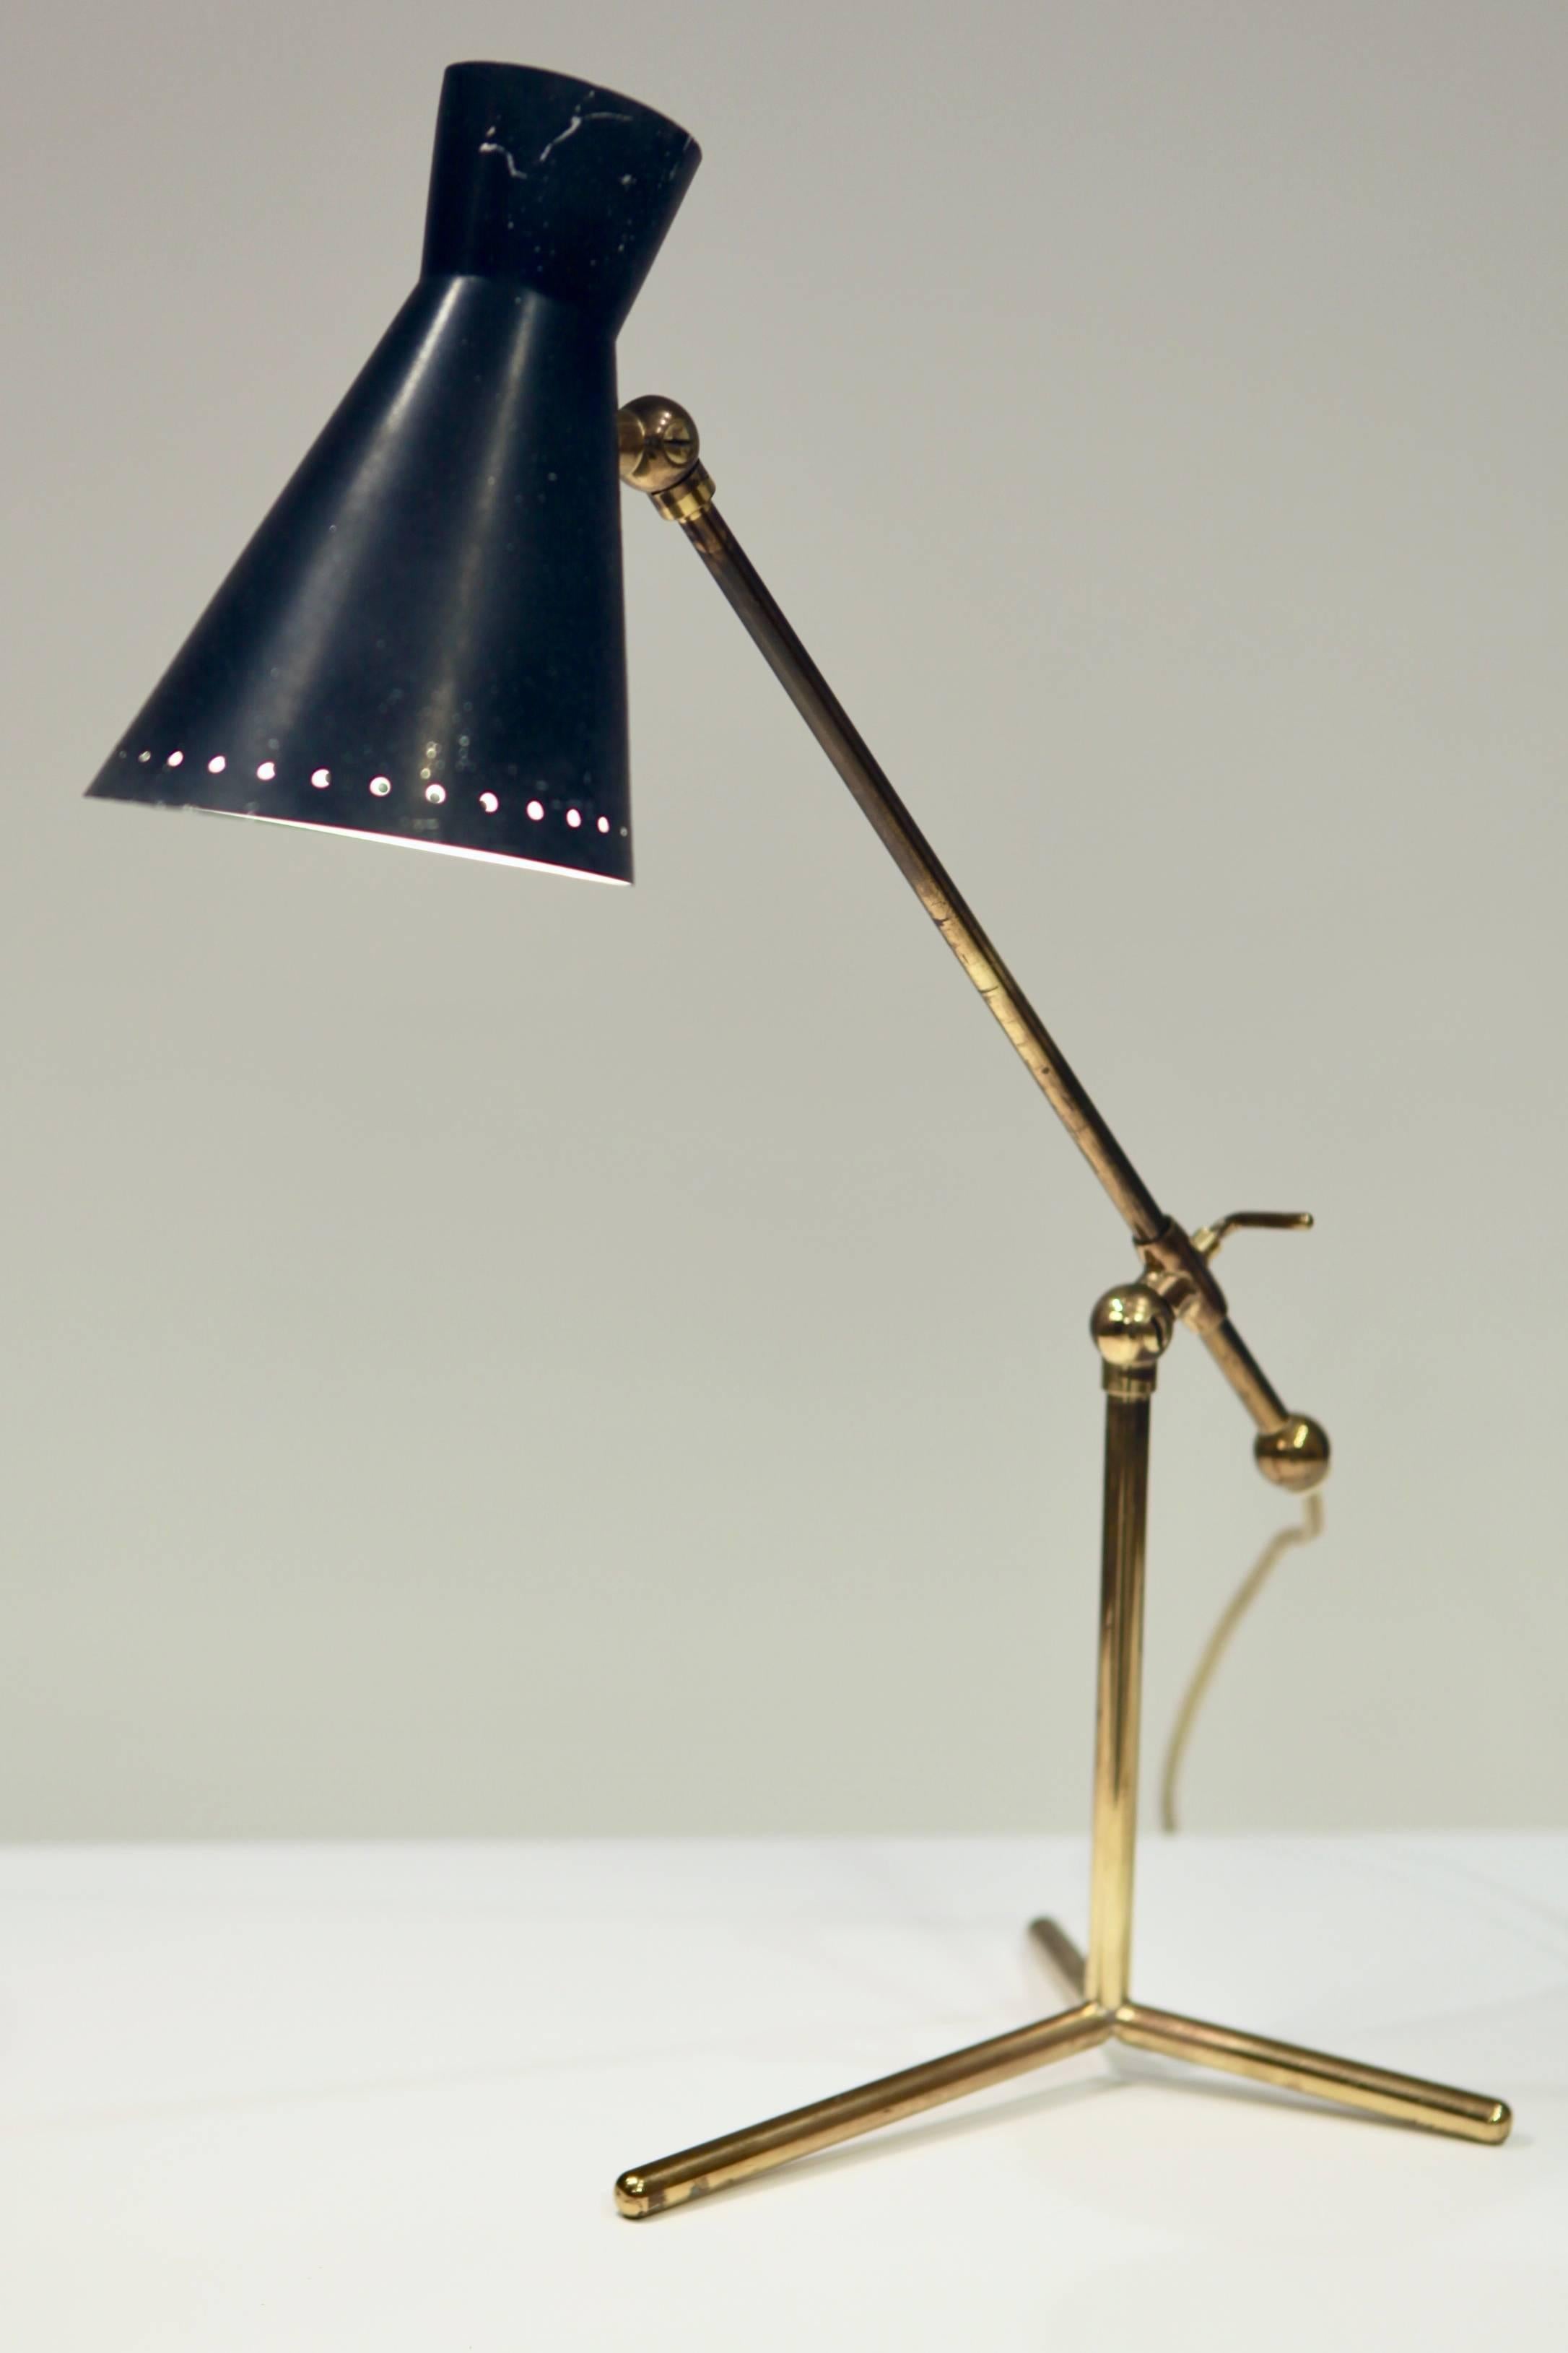 Lampe de bureau ou de table par Stilnovo, Italie années 1950
Laiton et métal laqué noir, hauteur réglable, 
rewired